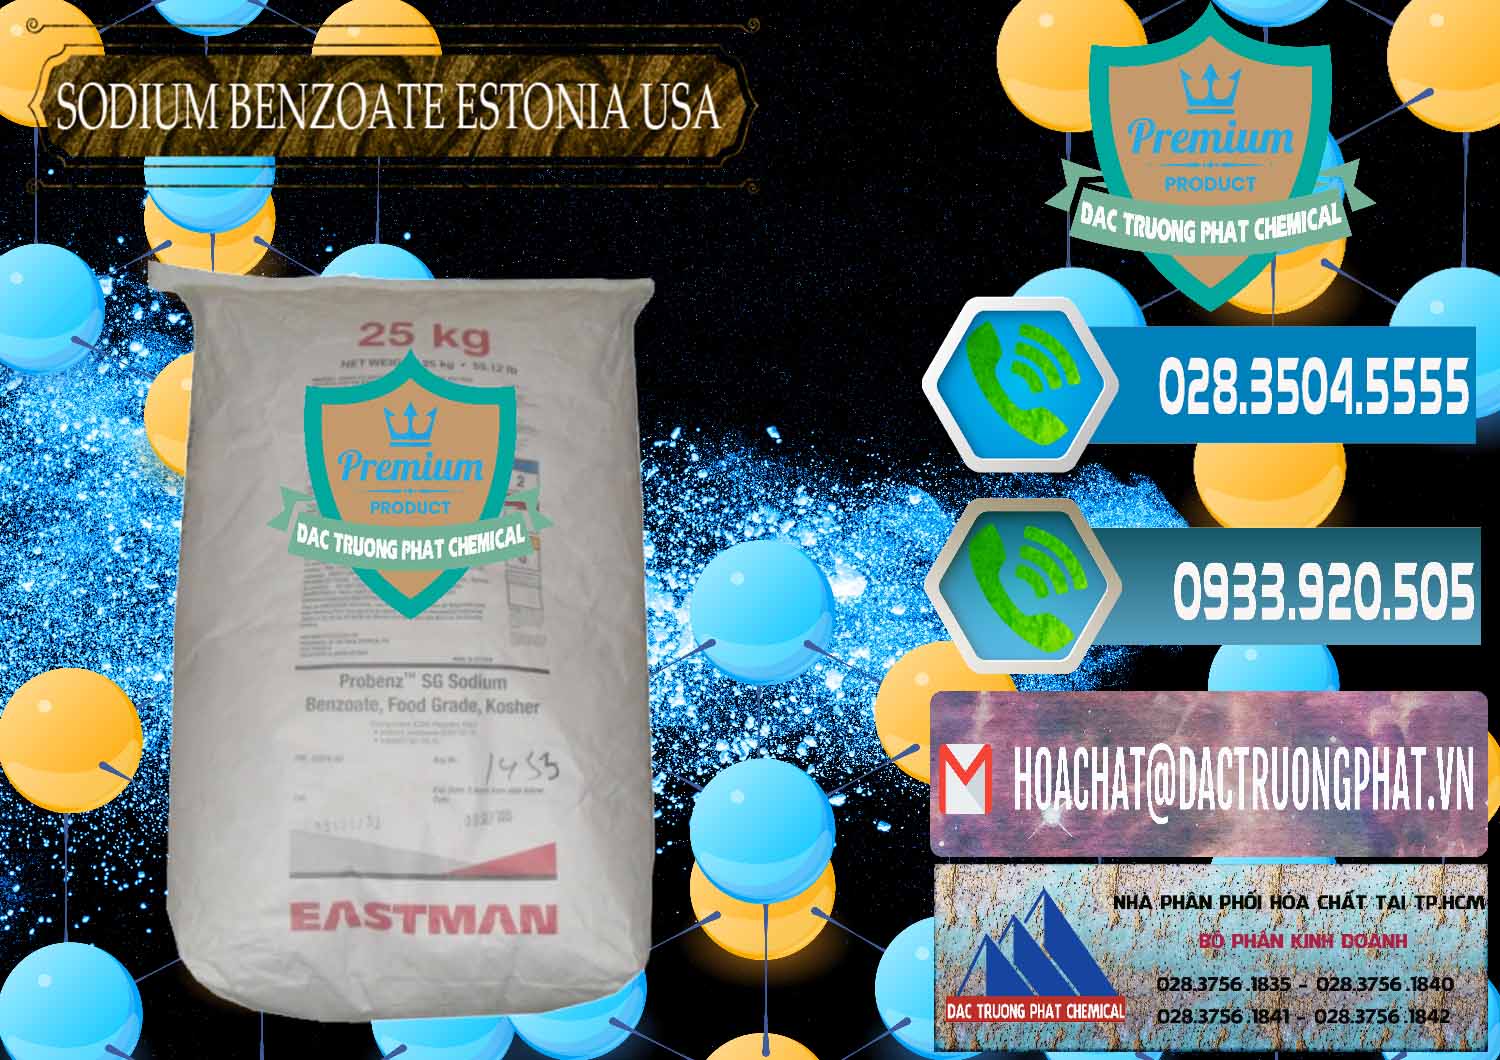 Đơn vị nhập khẩu và bán Sodium Benzoate - Mốc Bột Estonia Mỹ USA - 0468 - Công ty phân phối & cung cấp hóa chất tại TP.HCM - congtyhoachat.net